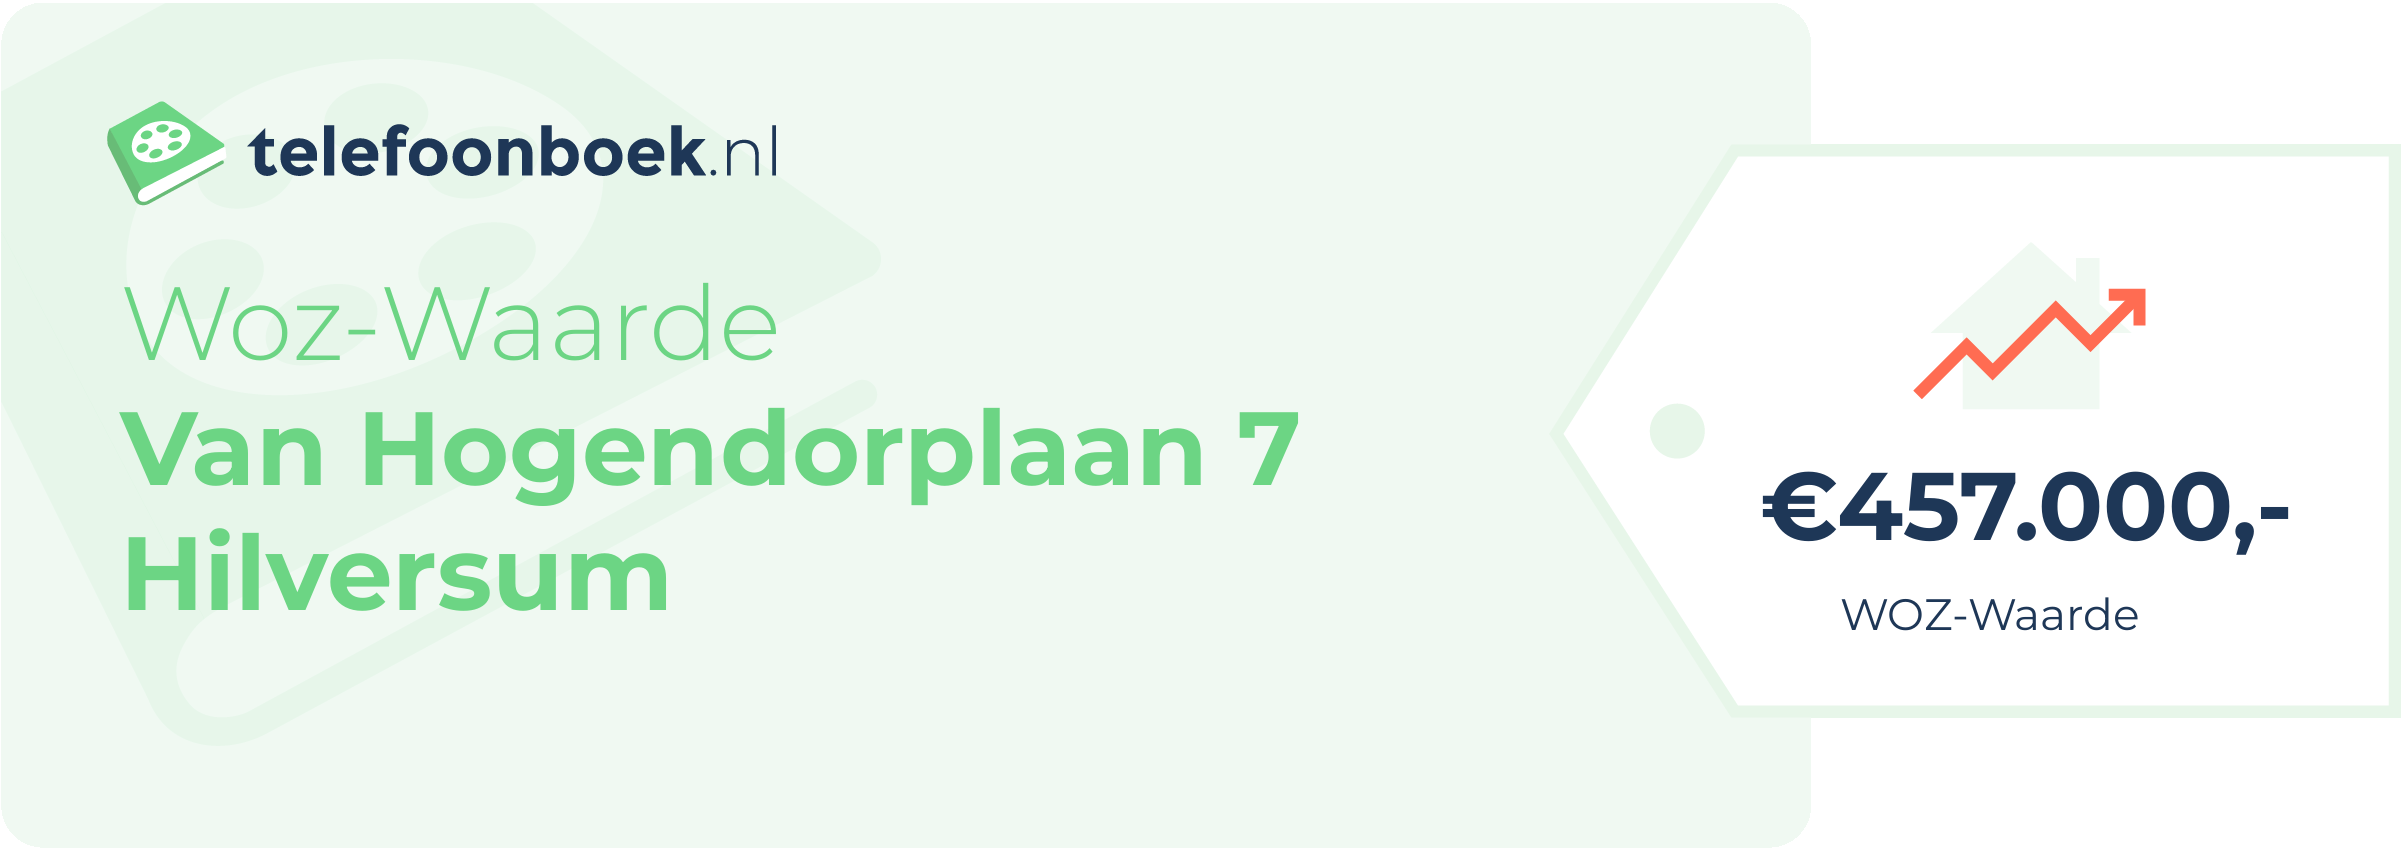 WOZ-waarde Van Hogendorplaan 7 Hilversum